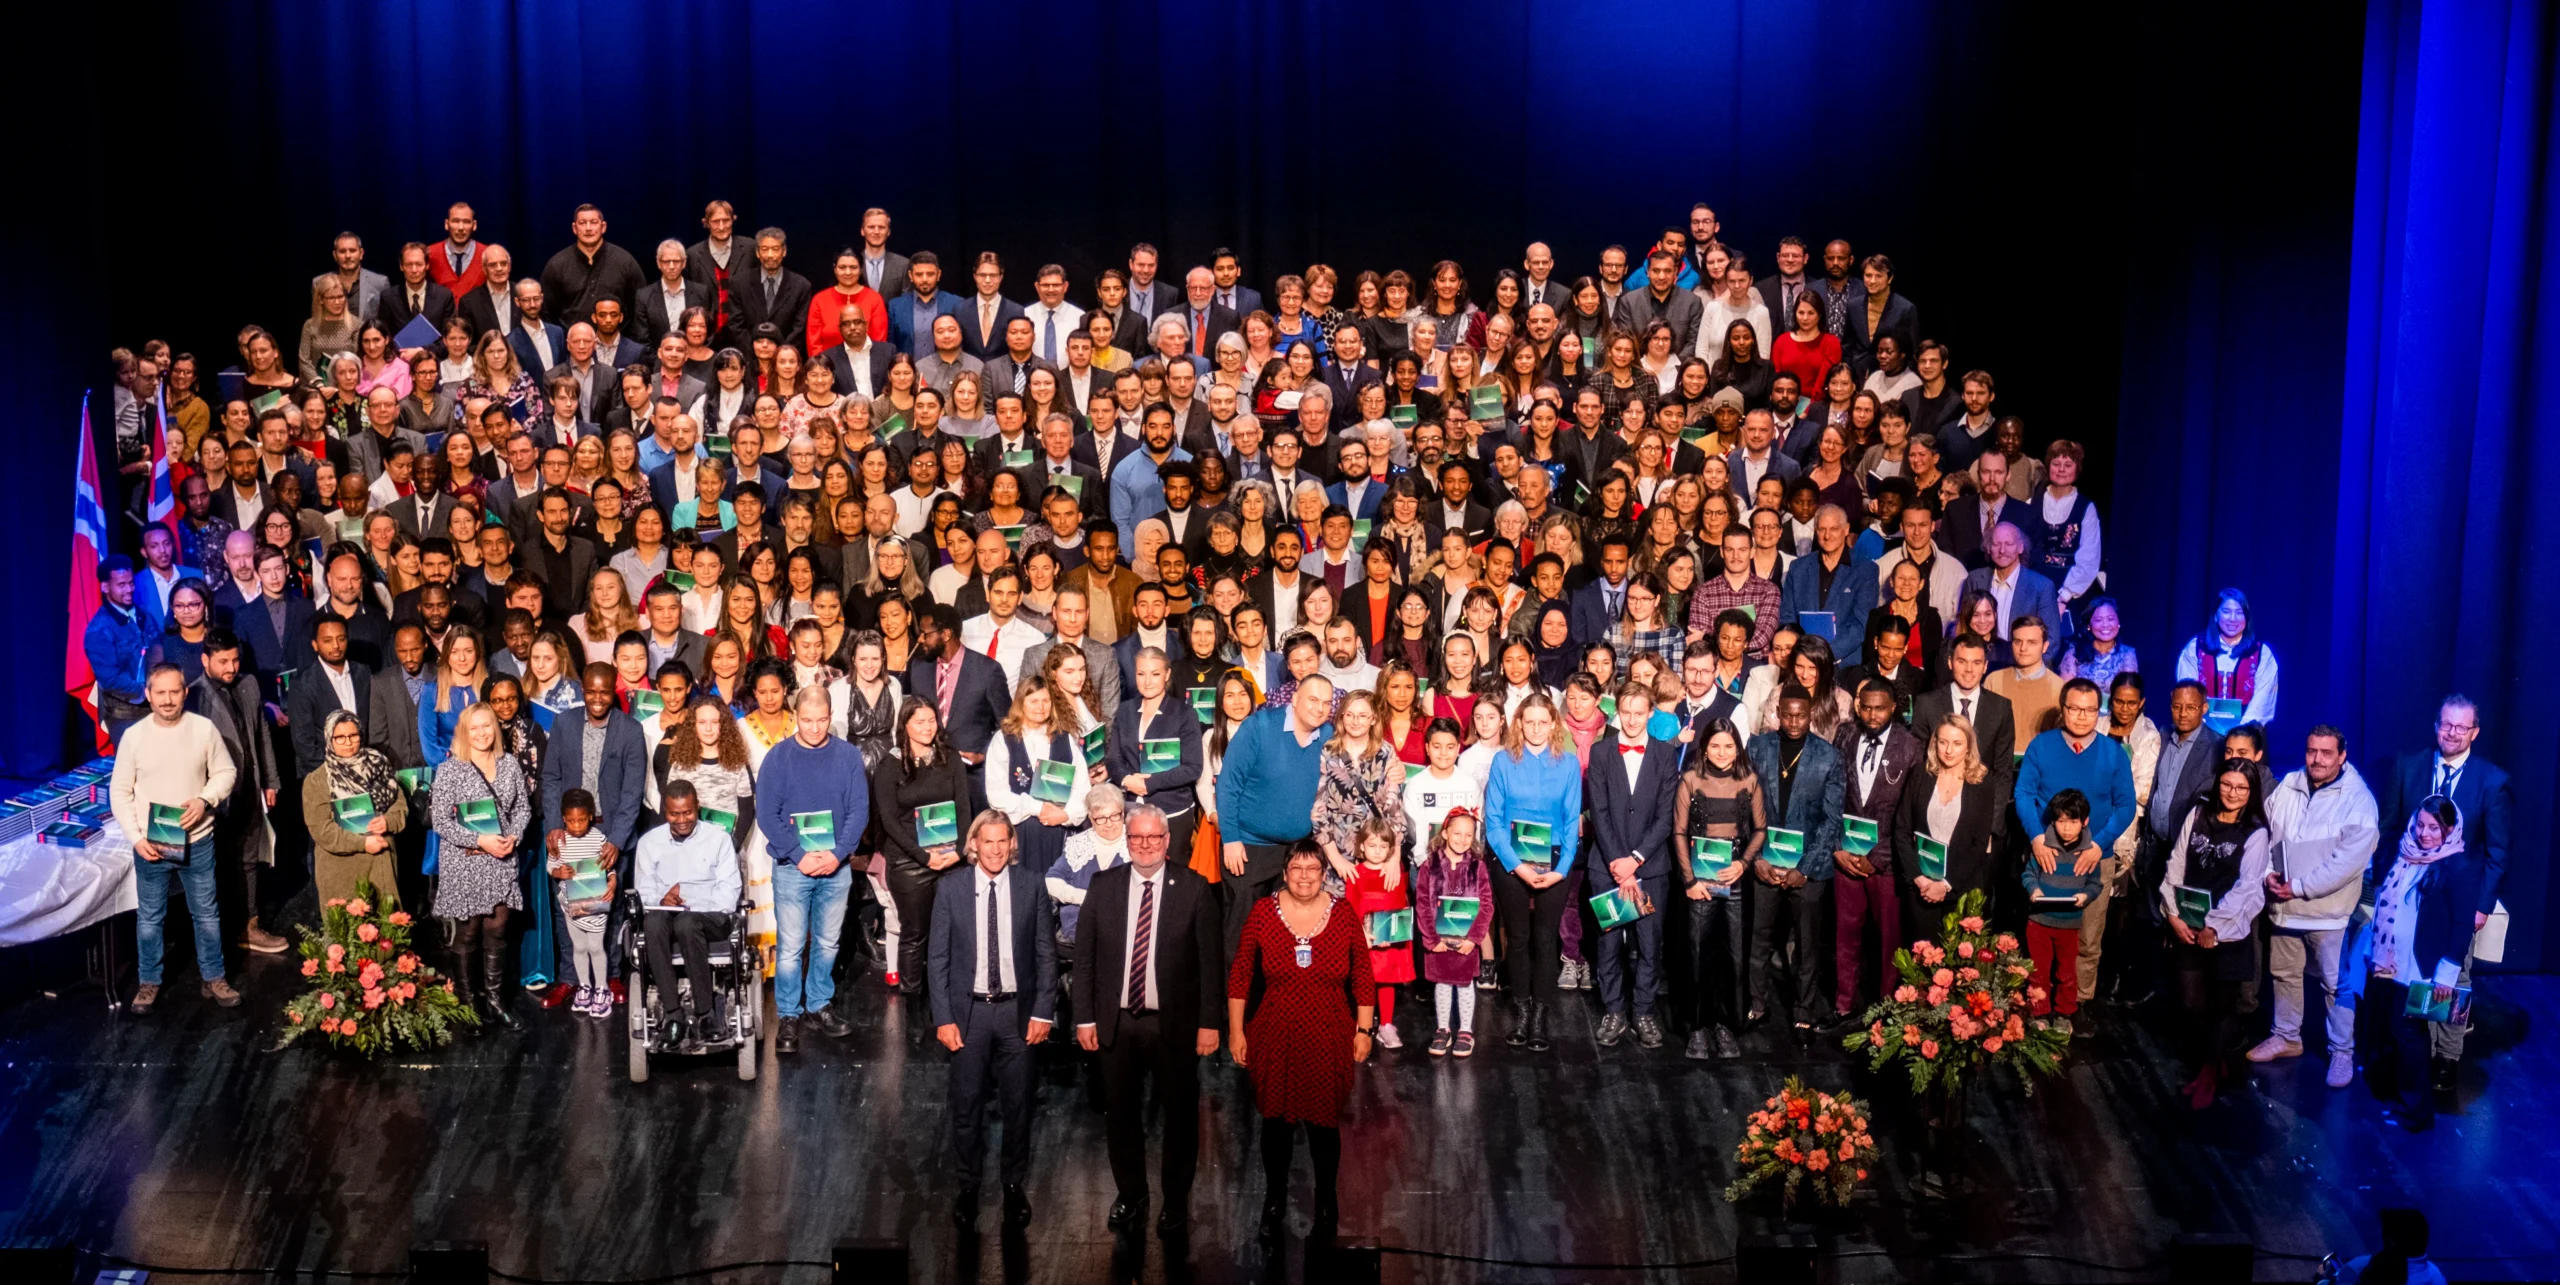 Bilde av nye statsborgere under Statsborgerseremoni i Trondheim.